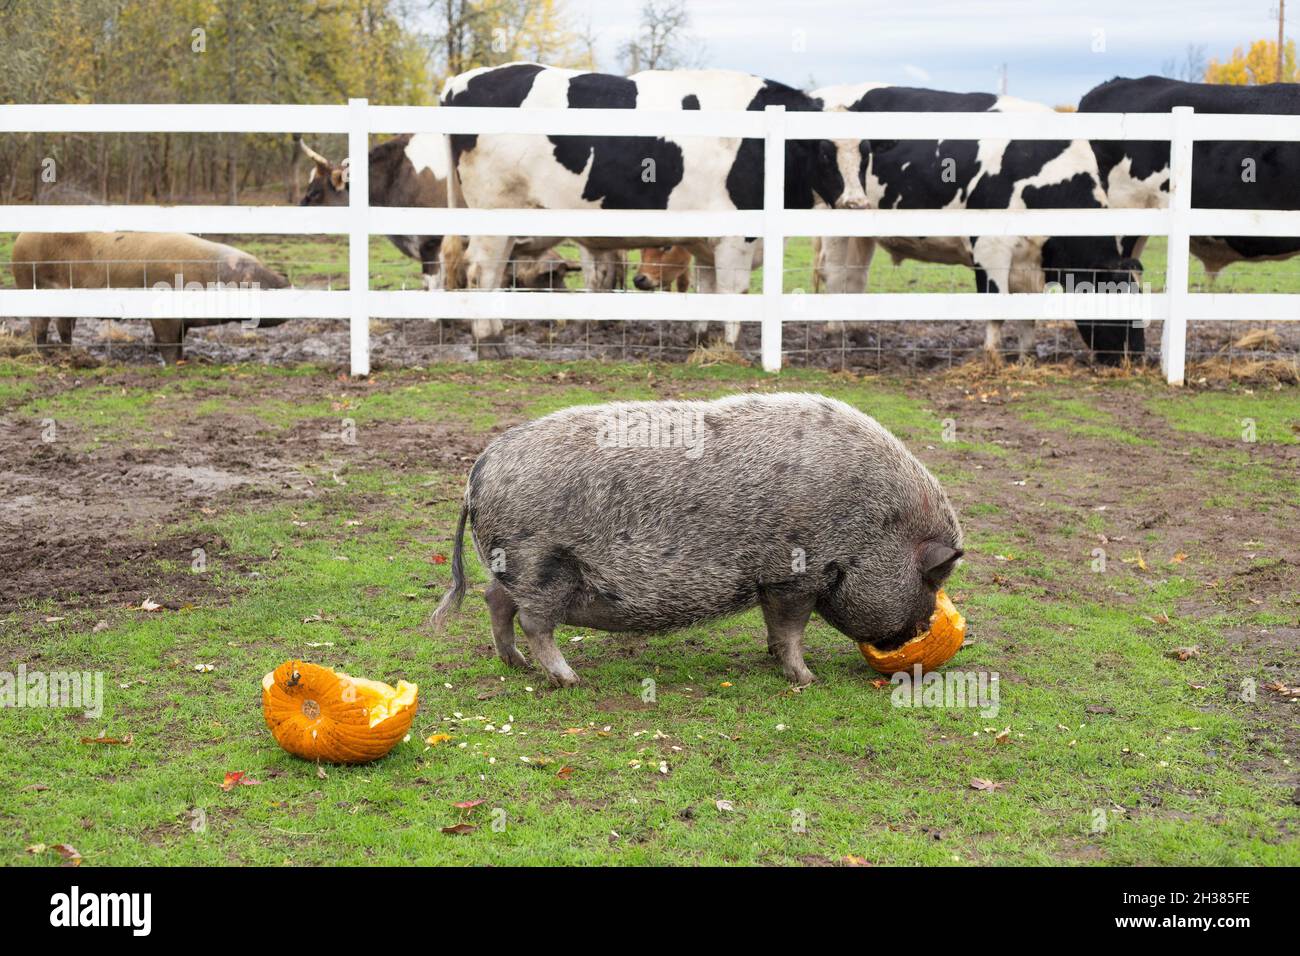 Un cochon mangeant une citrouille, avec des vaches en arrière-plan, dans un sanctuaire d'animaux de ferme. Banque D'Images